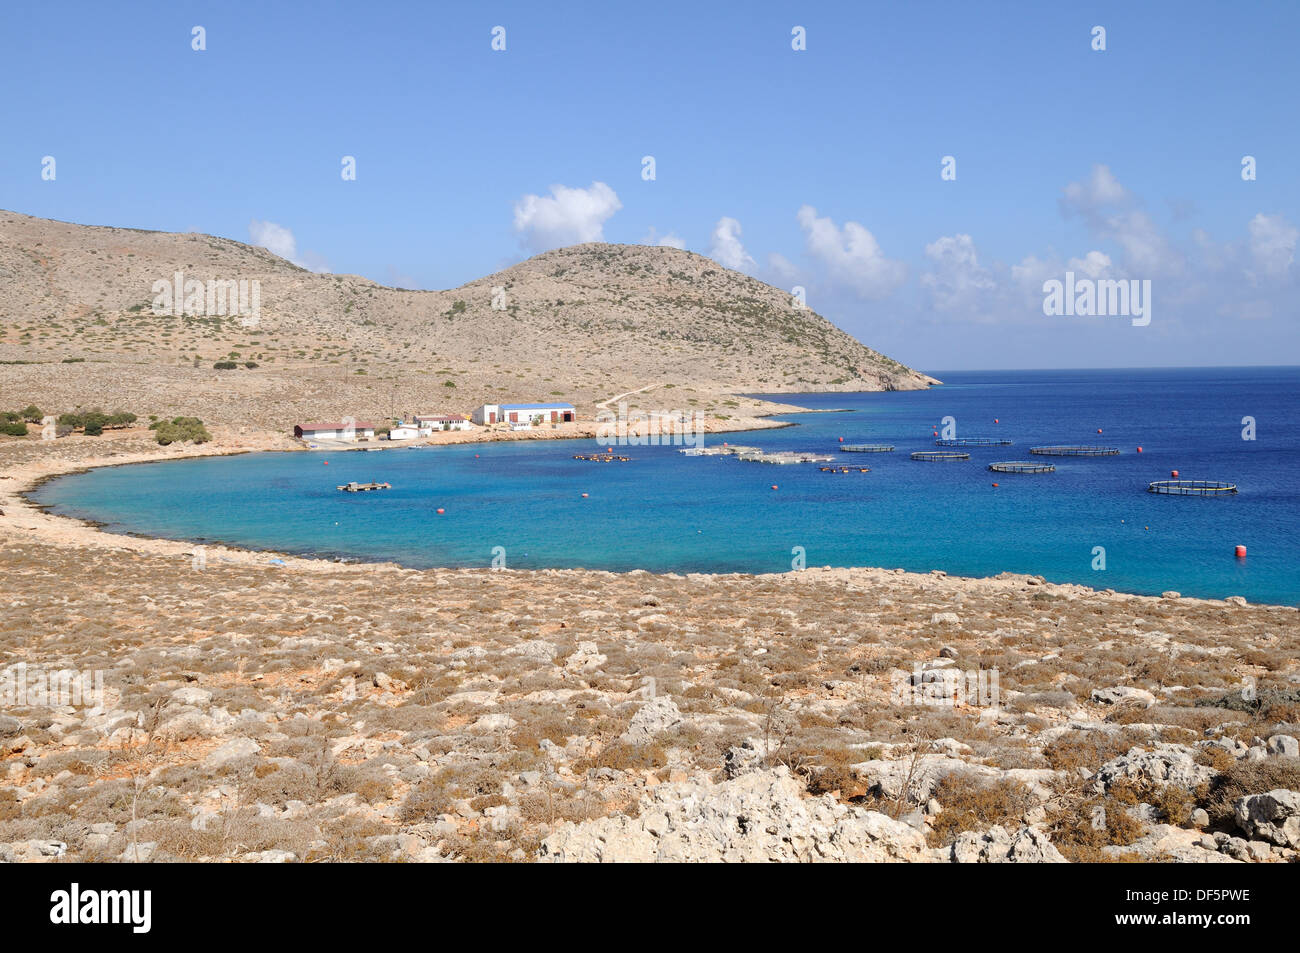 Une ferme piscicole dans une crique sur l'île grecque de Halki Chalki Mer Egée Le Dodécanèse Grèce Banque D'Images